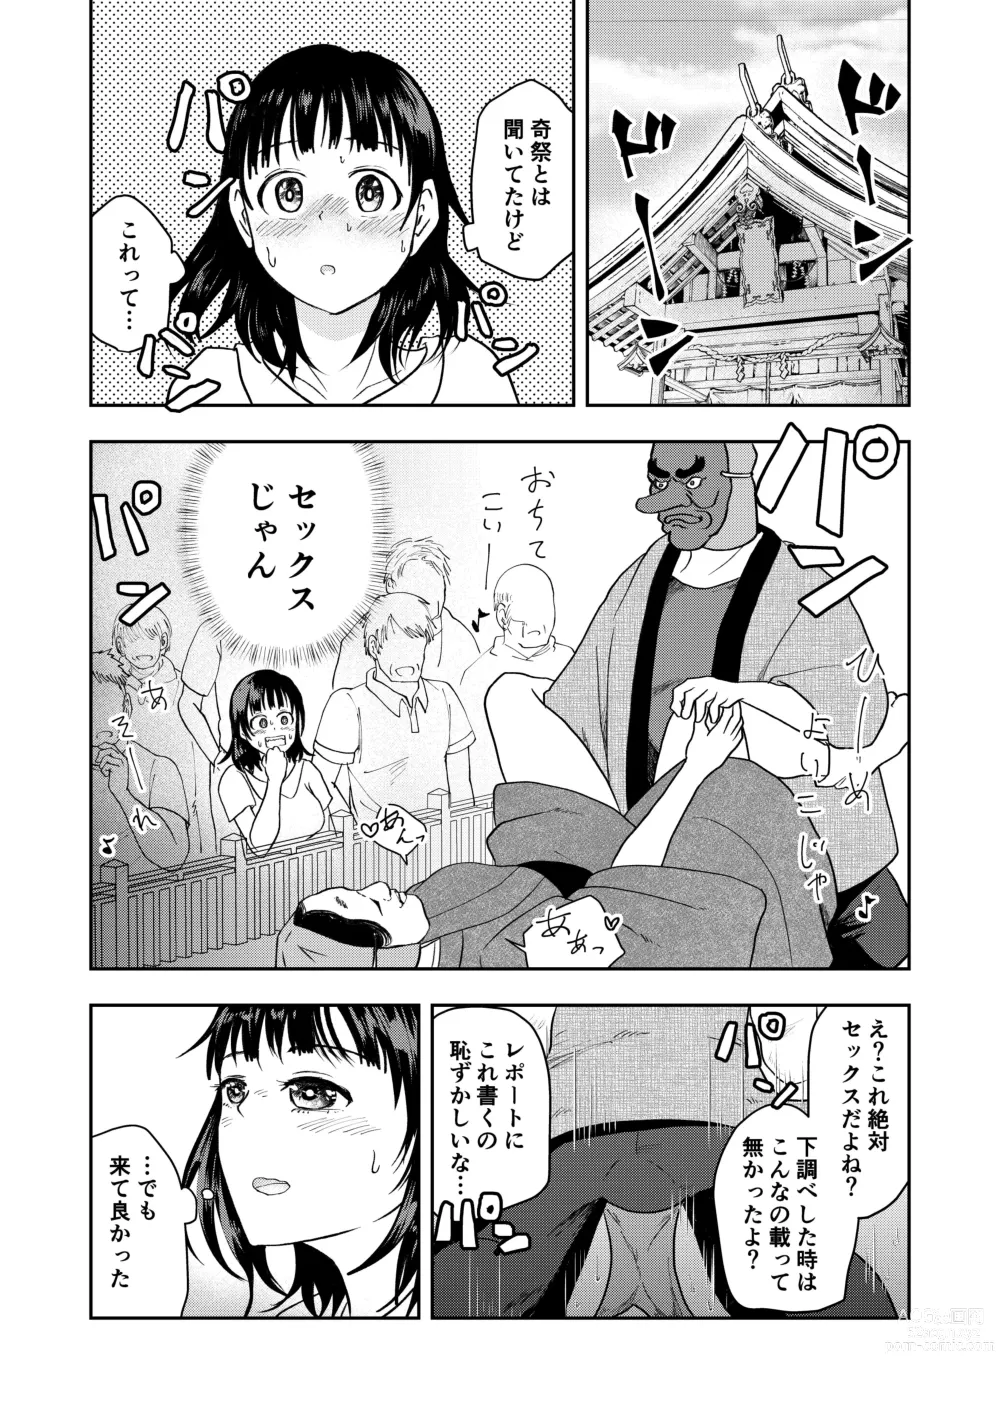 Page 3 of doujinshi Inaka no Omatsuri